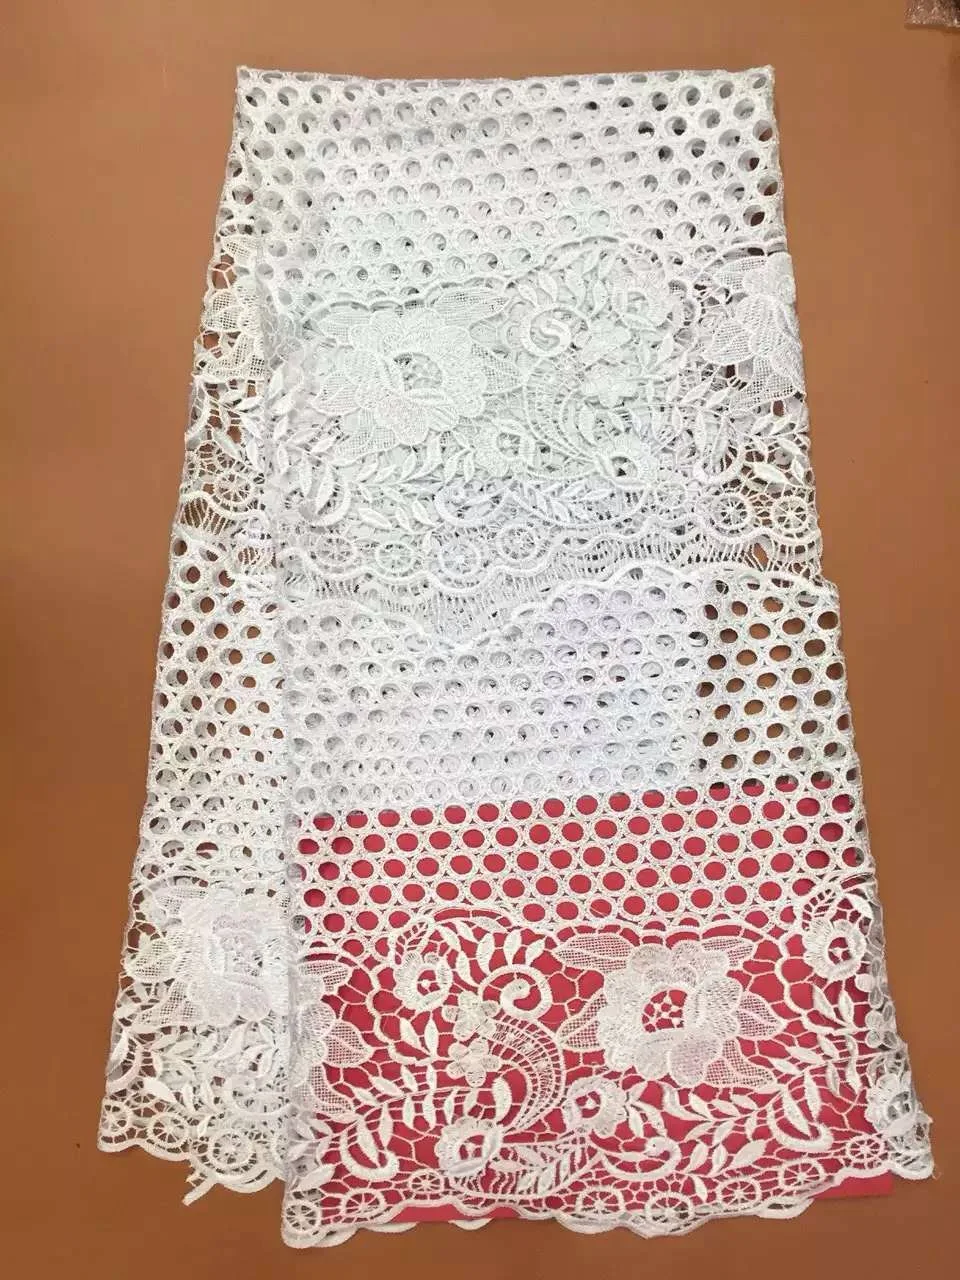 Высокое качество африканская кружевная ткань для свадьбы вышитая Франция Сетка кружевная ткань черный гипюрная кружевная ткань в нигерийском стиле кружева K-J4973